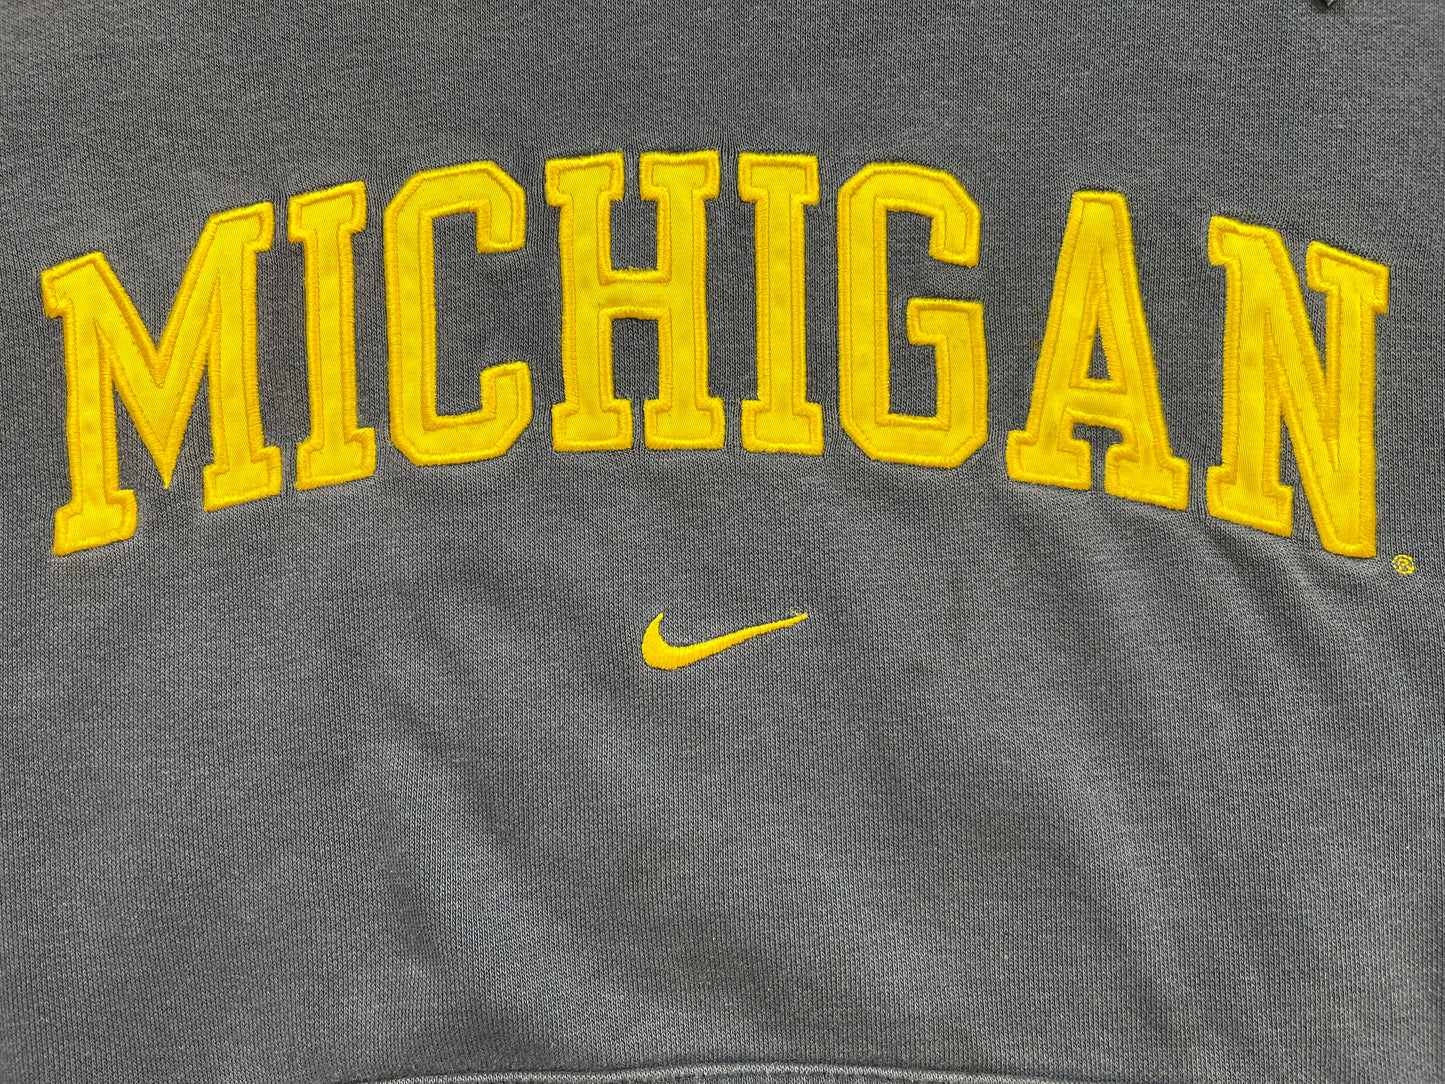 Michigan Centerswoosh Sweatshirt